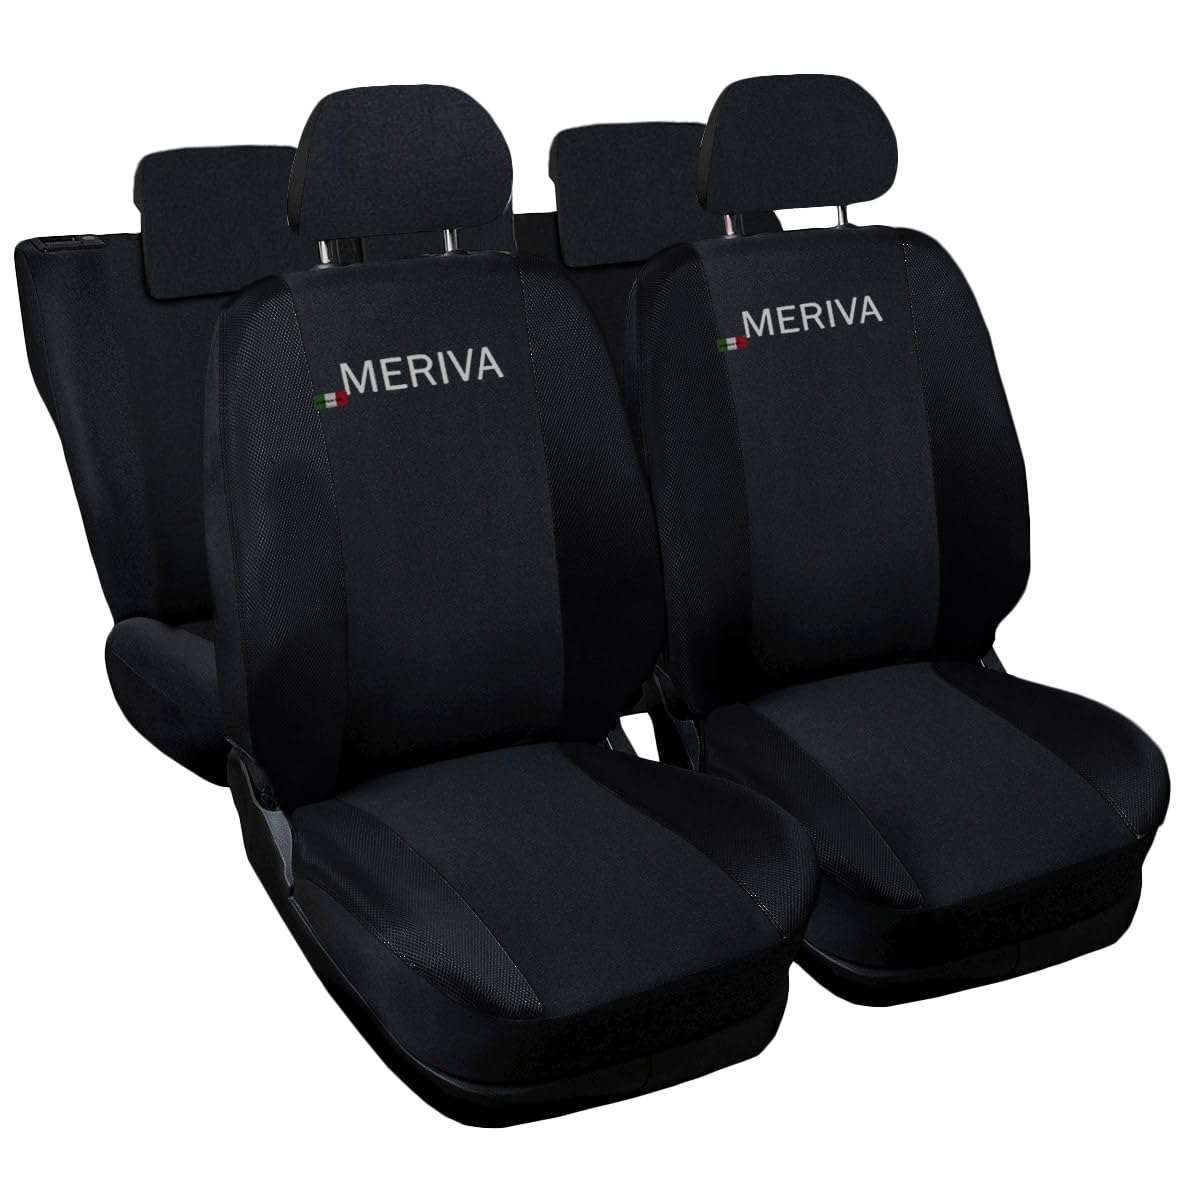 Auto Accessori Lupex - Autositzbezüge kompatibel für Meriva, schwarz, Made in Italy, Polyestergewebe, komplettes Sitzbezug-Set, mit Stickerei Modellnamen von Auto Accessori Lupex